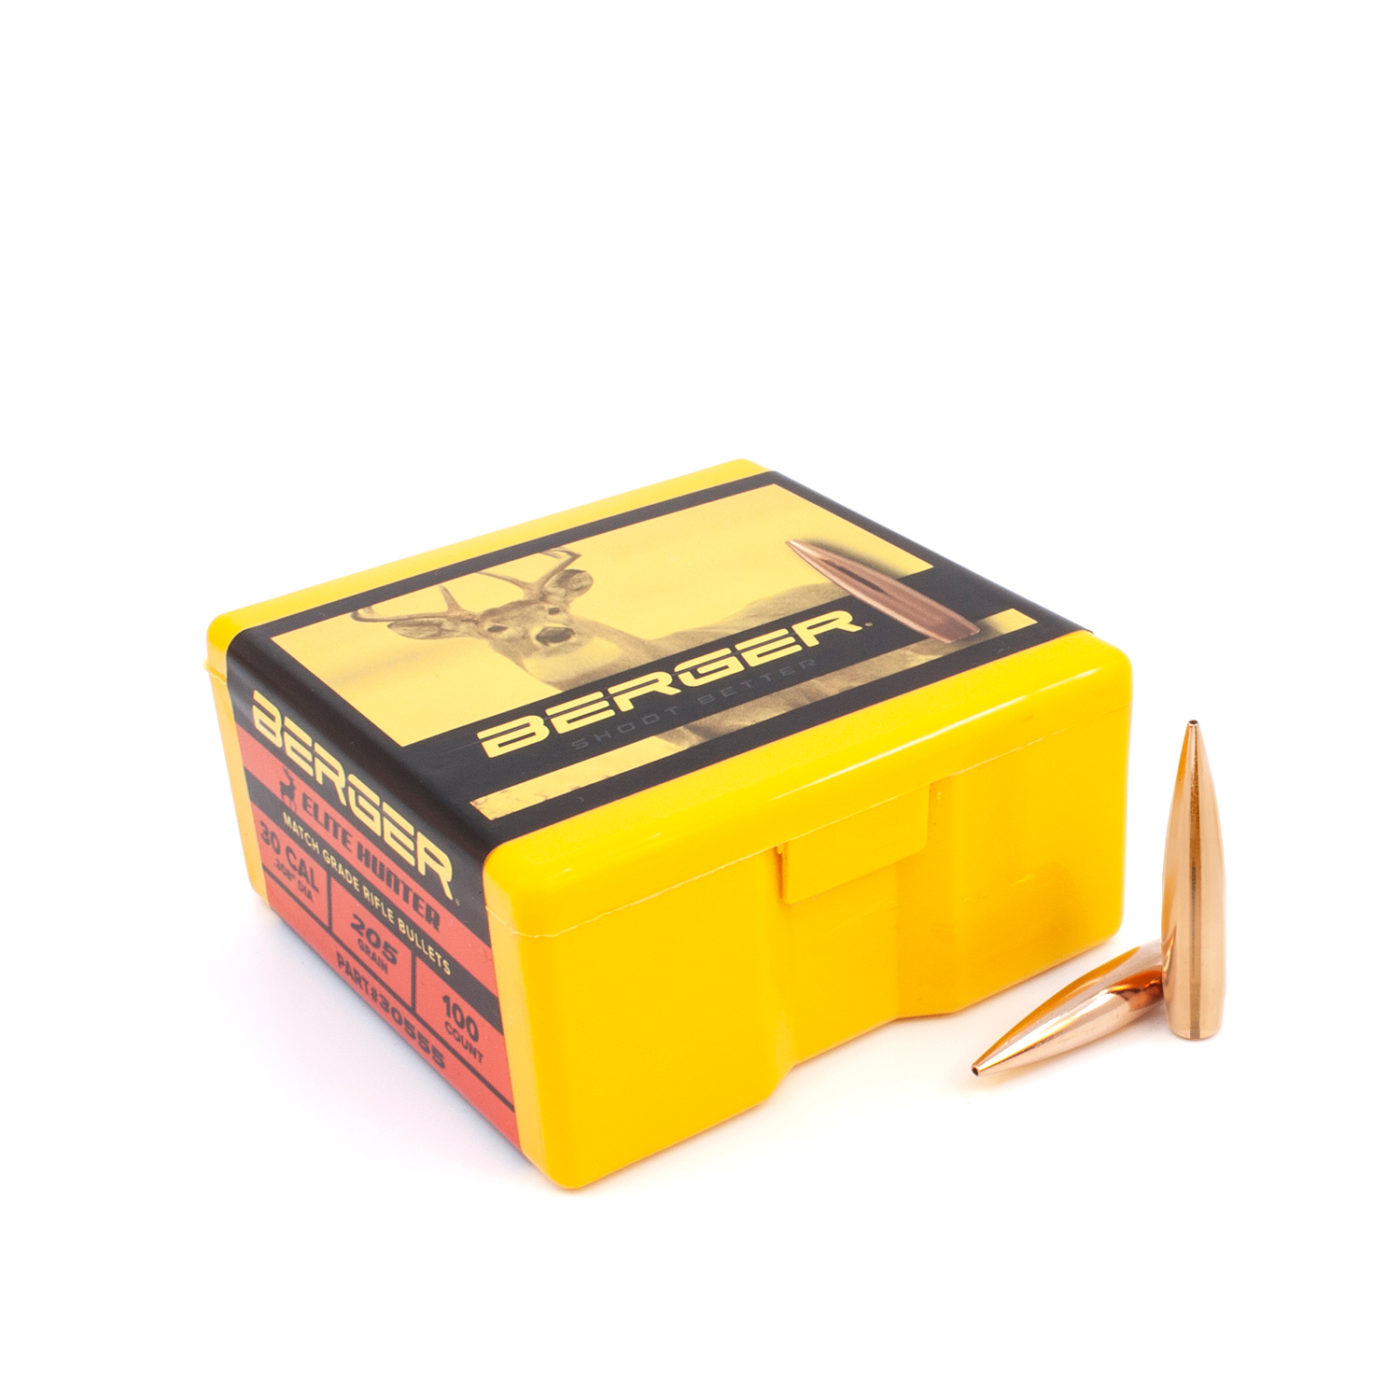 Berger Bullets - .30 cal 205gr Elite Hunter - Box of 100